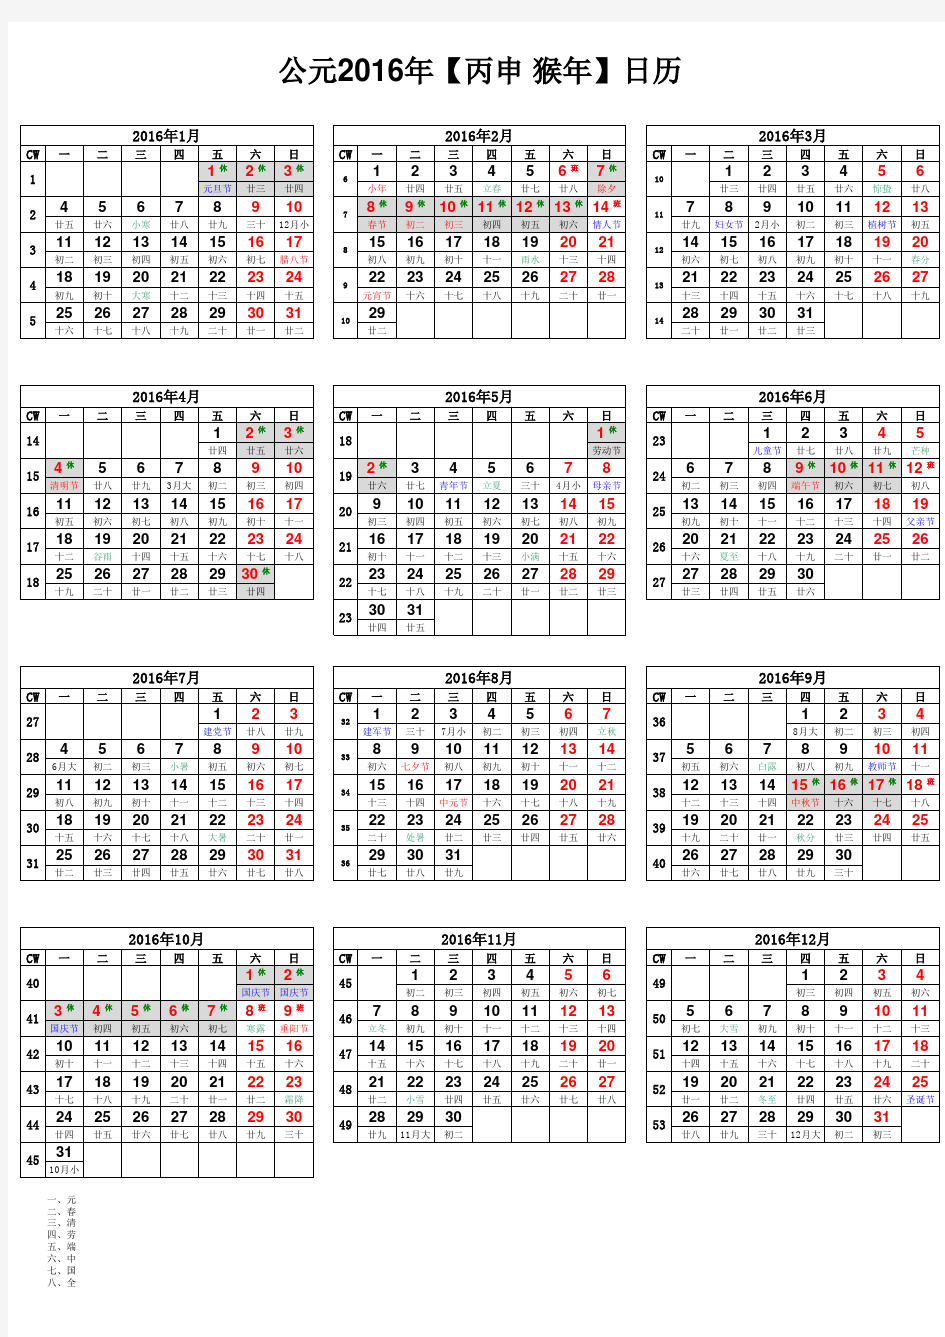 2016年日历表打印版(周一第一天-含农历、周数)